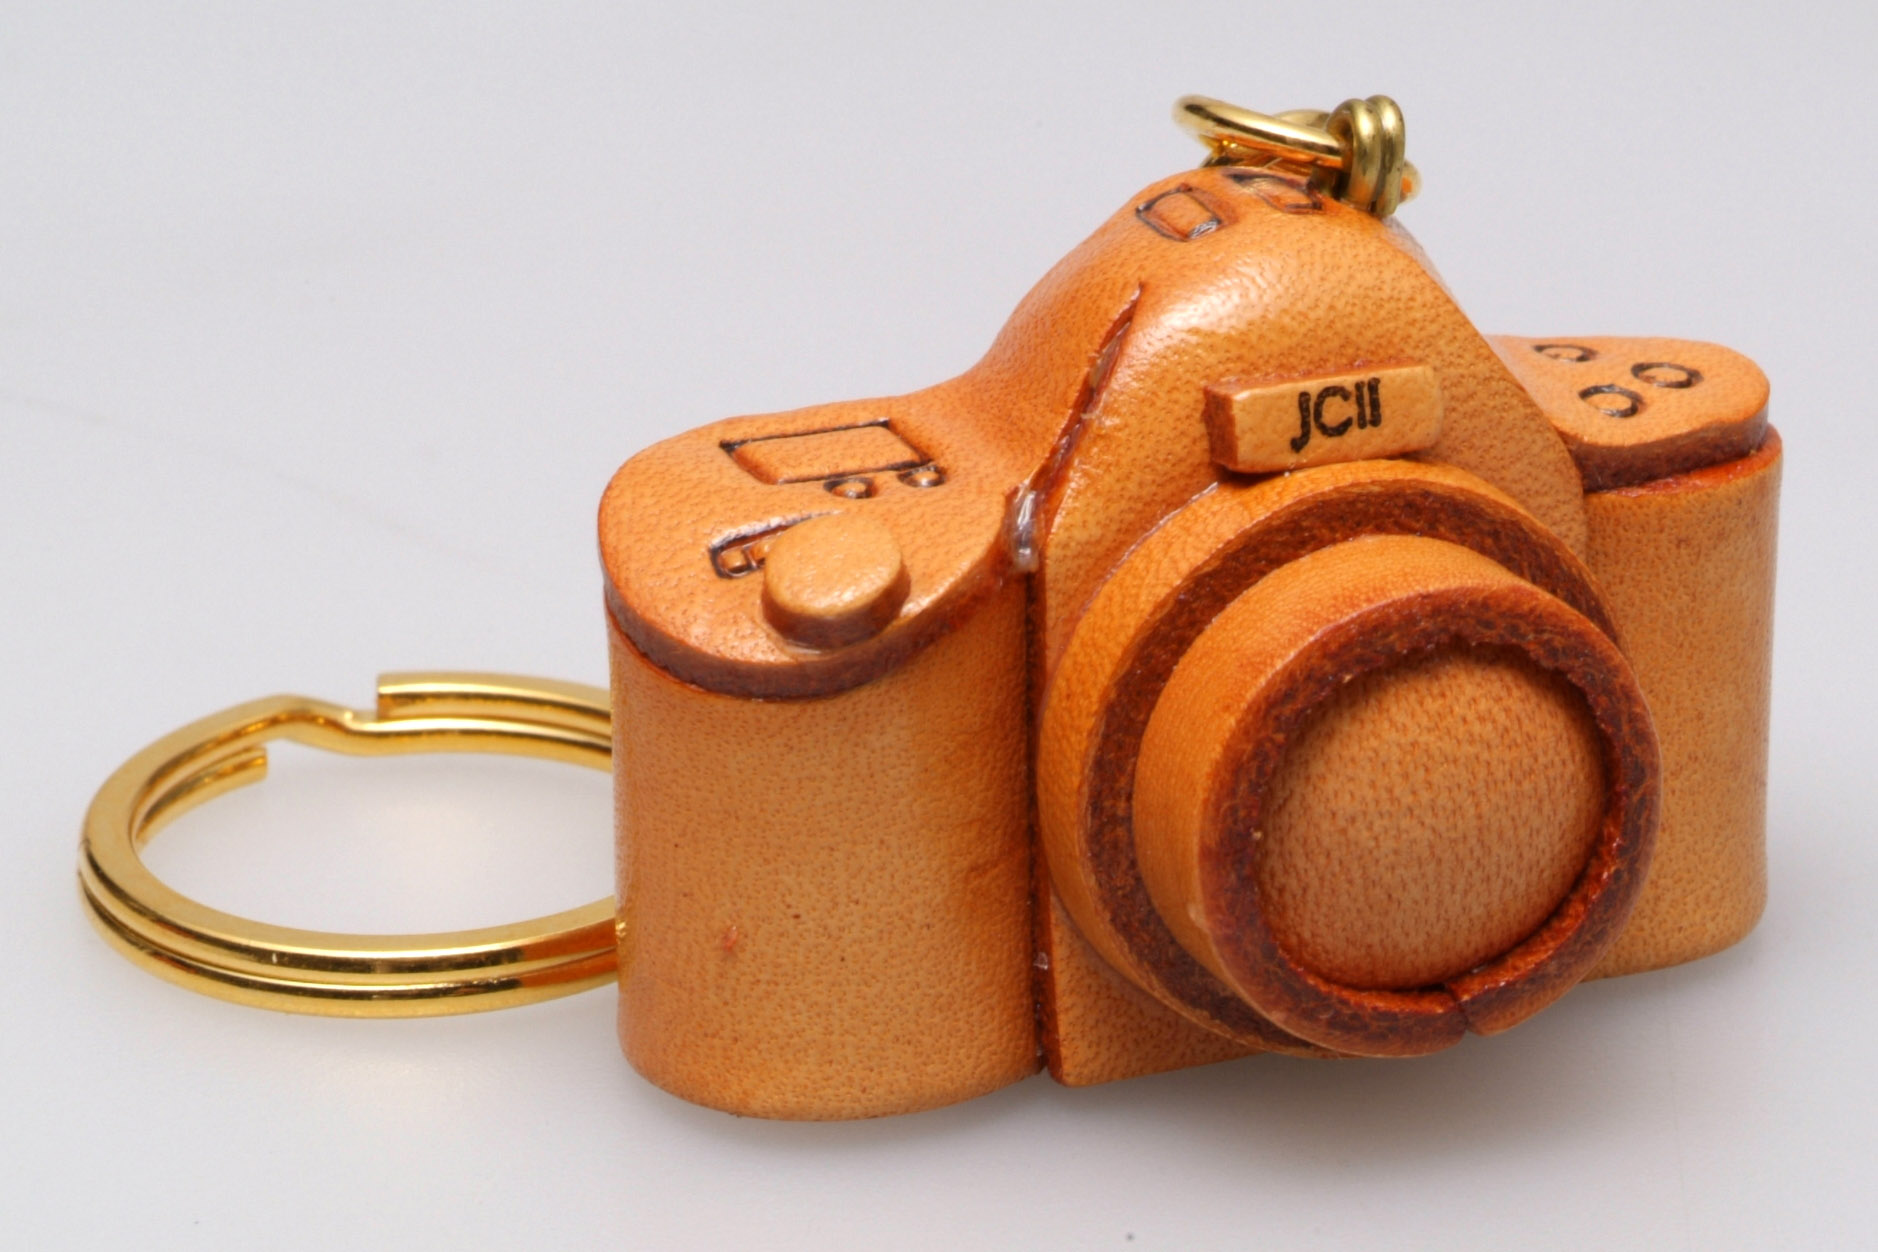 日本カメラ博物館 JCII Camera Museum：レザーキーホルダー 一眼レフ型